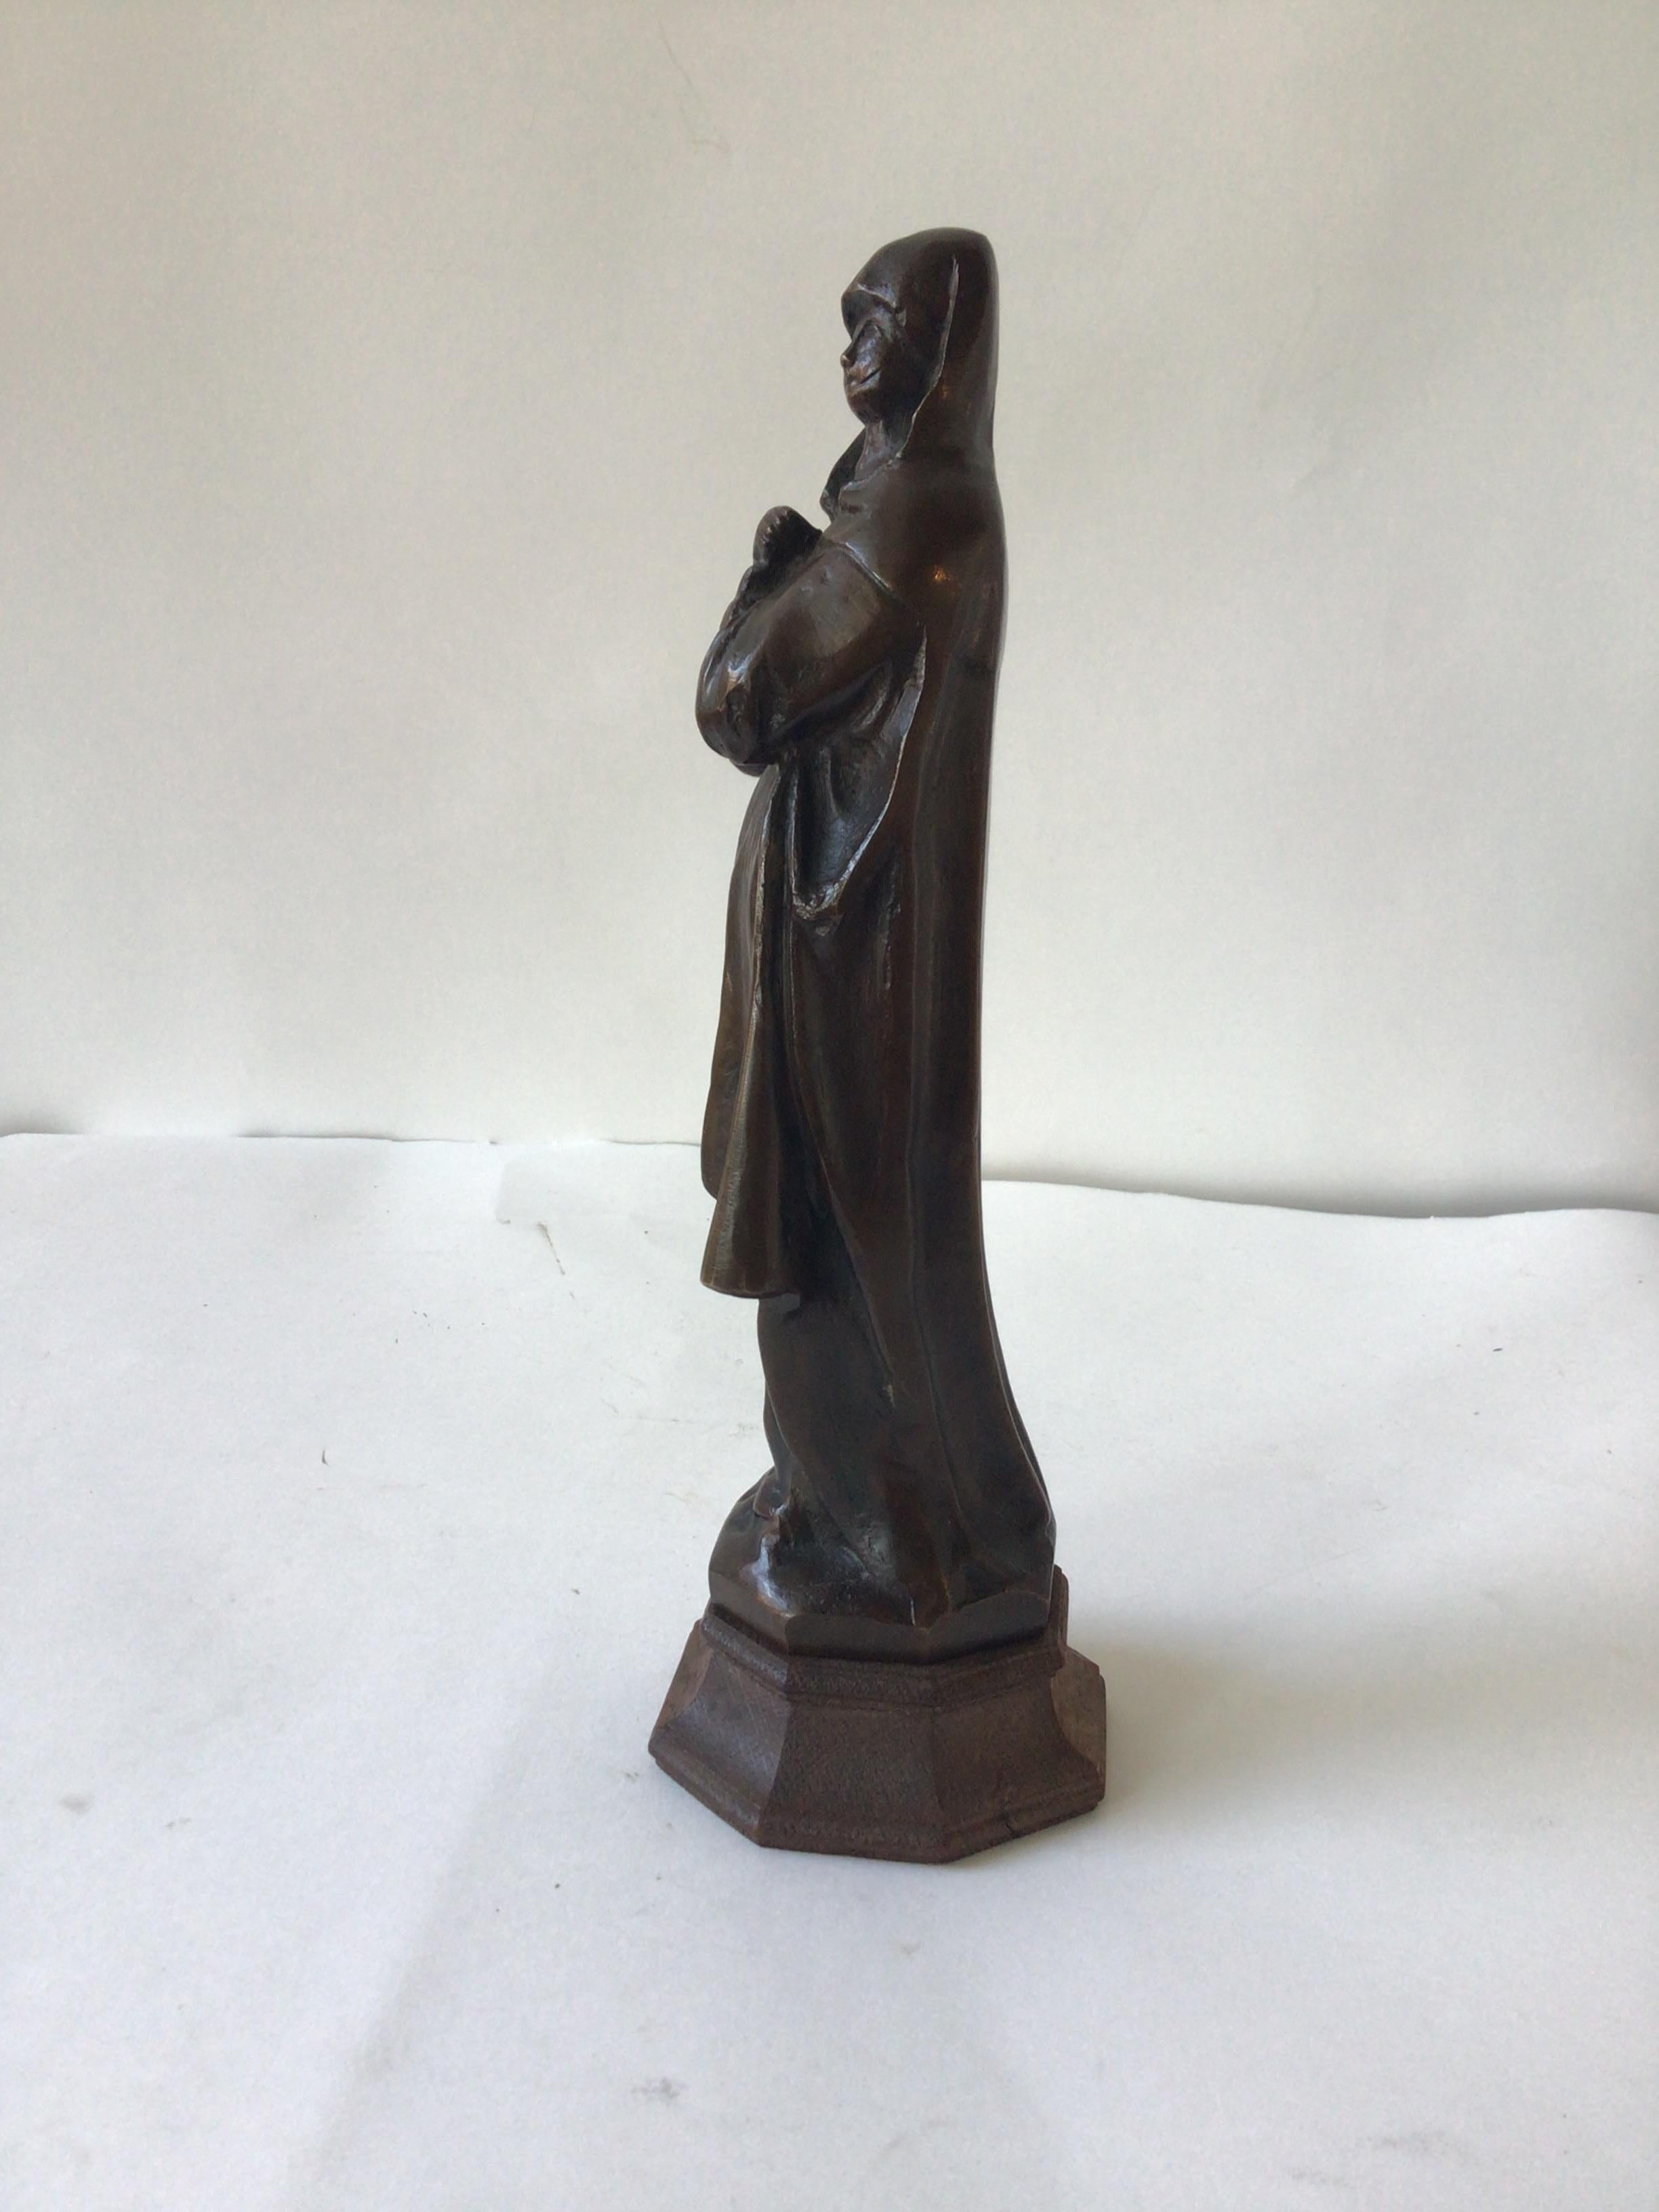 1940s bronze sculpture of a nun.